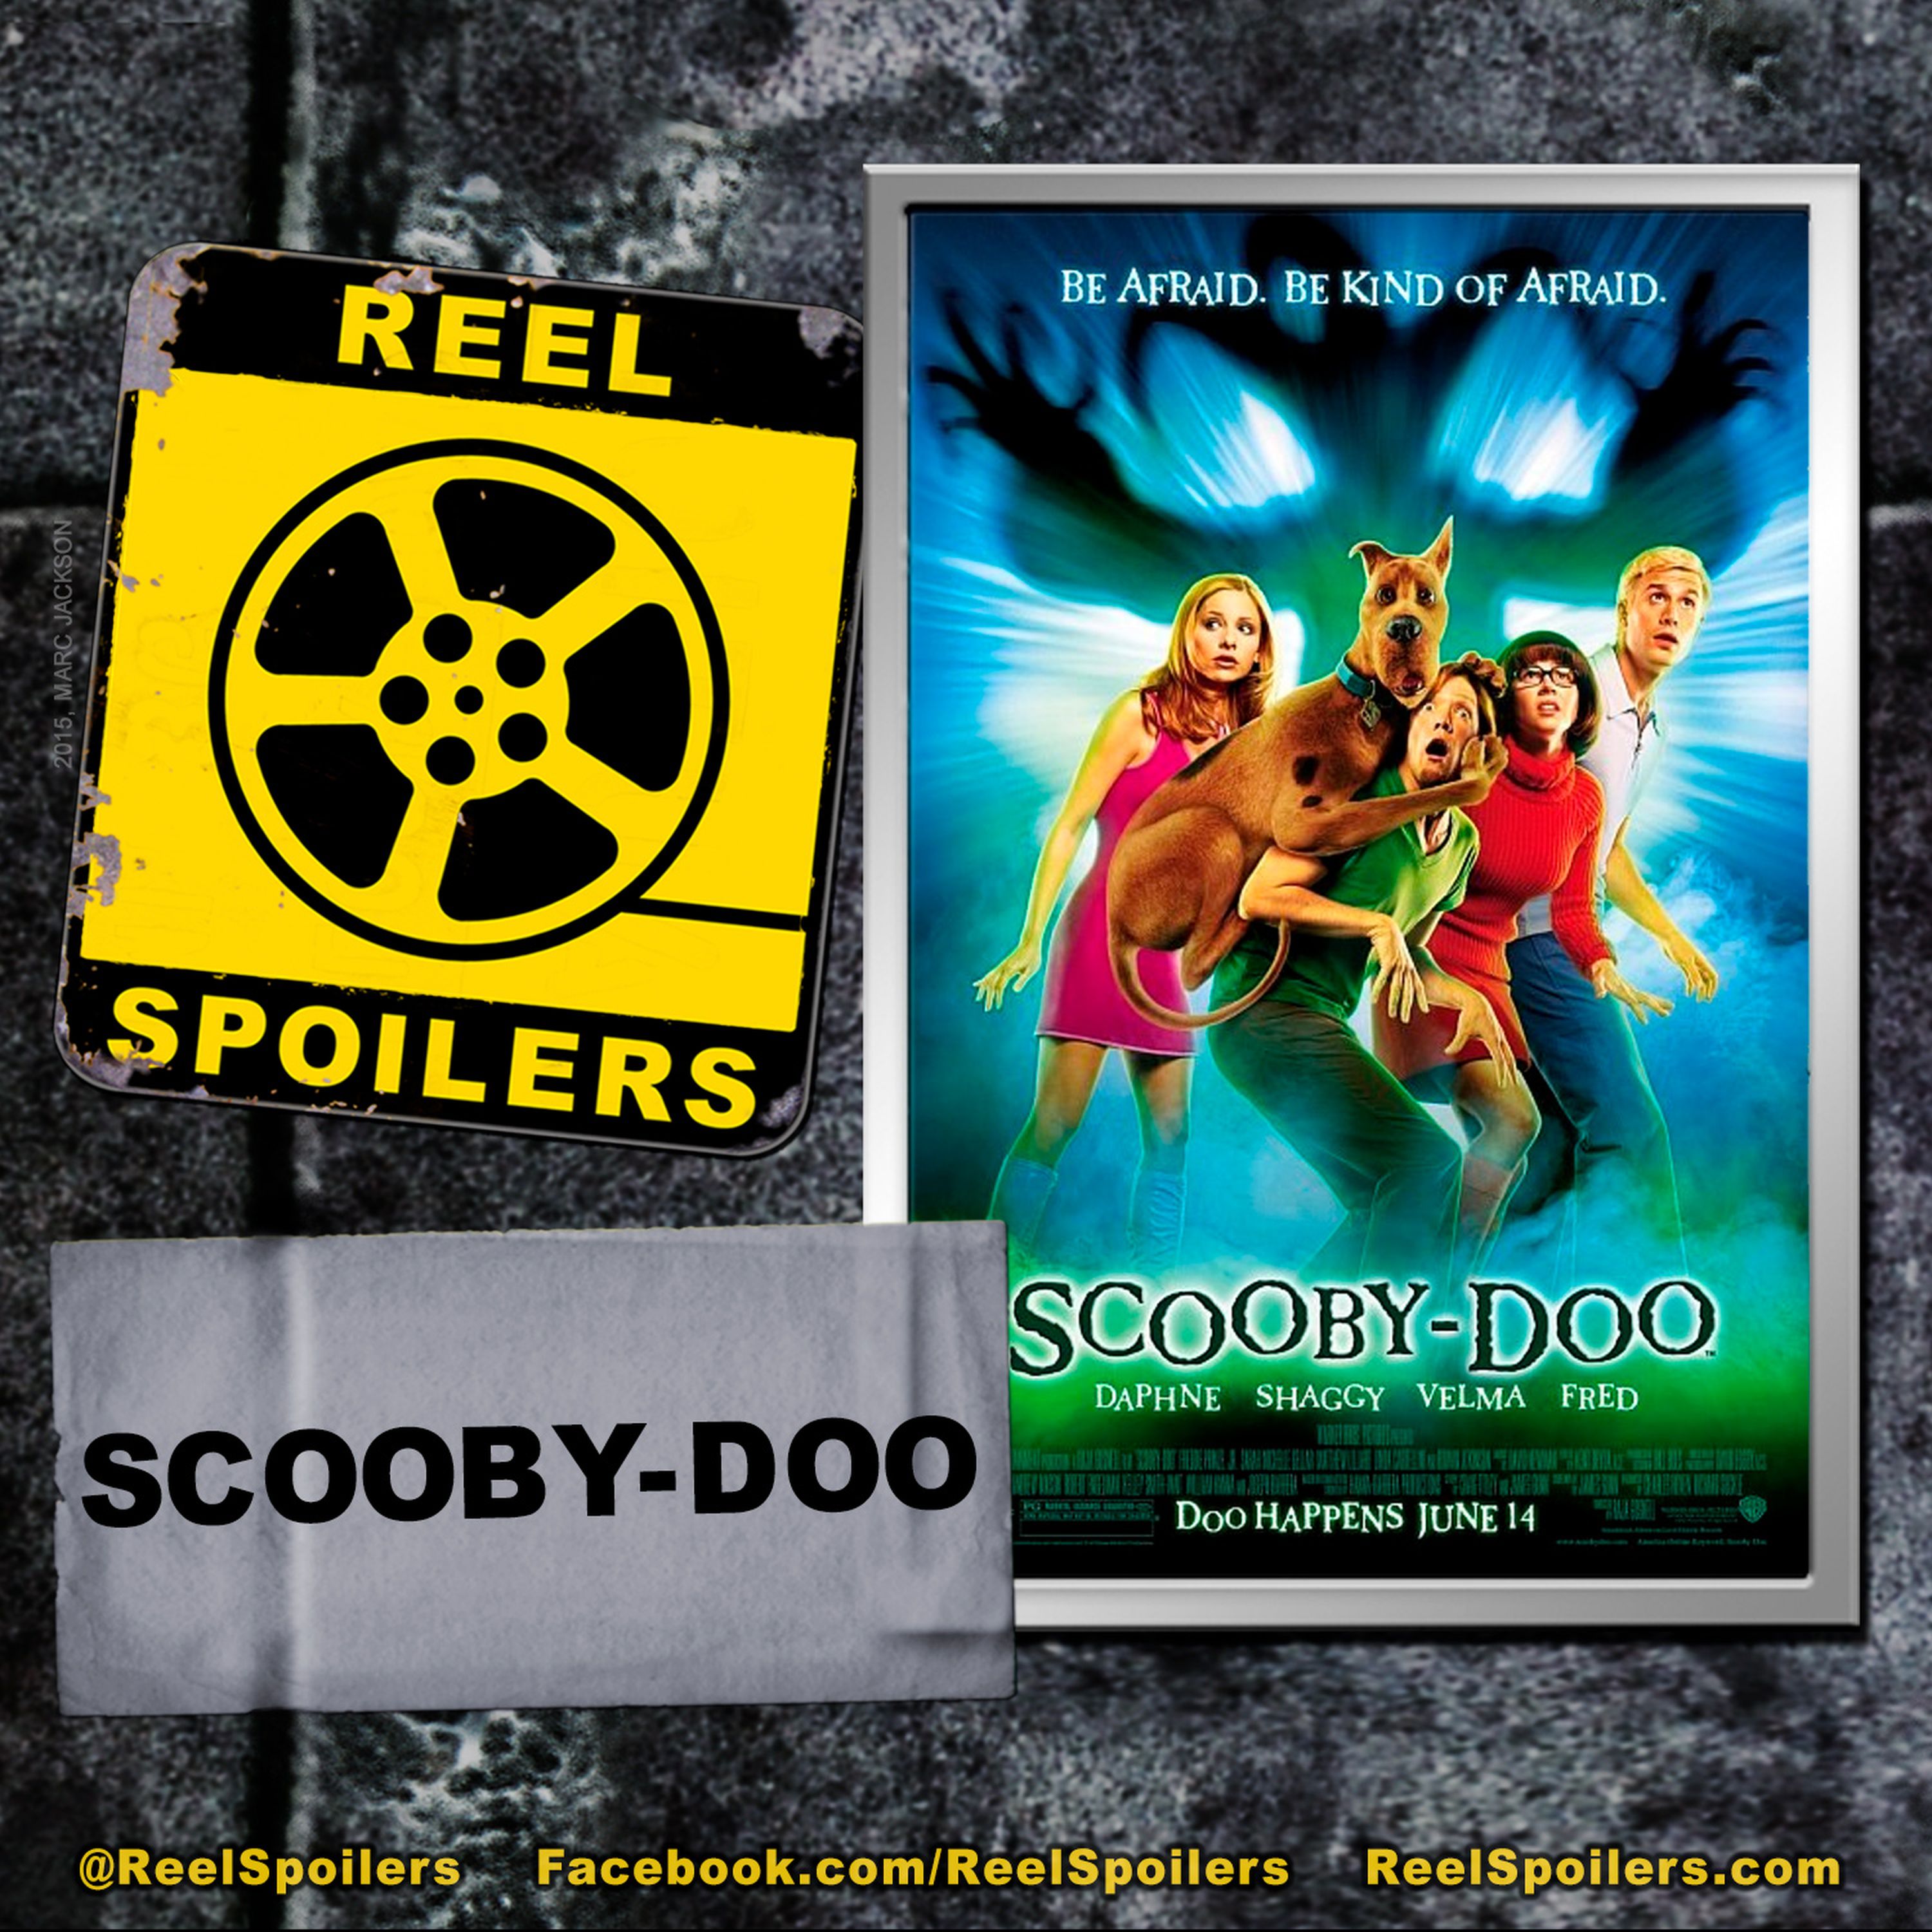 SCOOBY-DOO (2002) Starring Matthew Lillard, Freddie Prinze Jr., Sarah Michelle Gellar Image